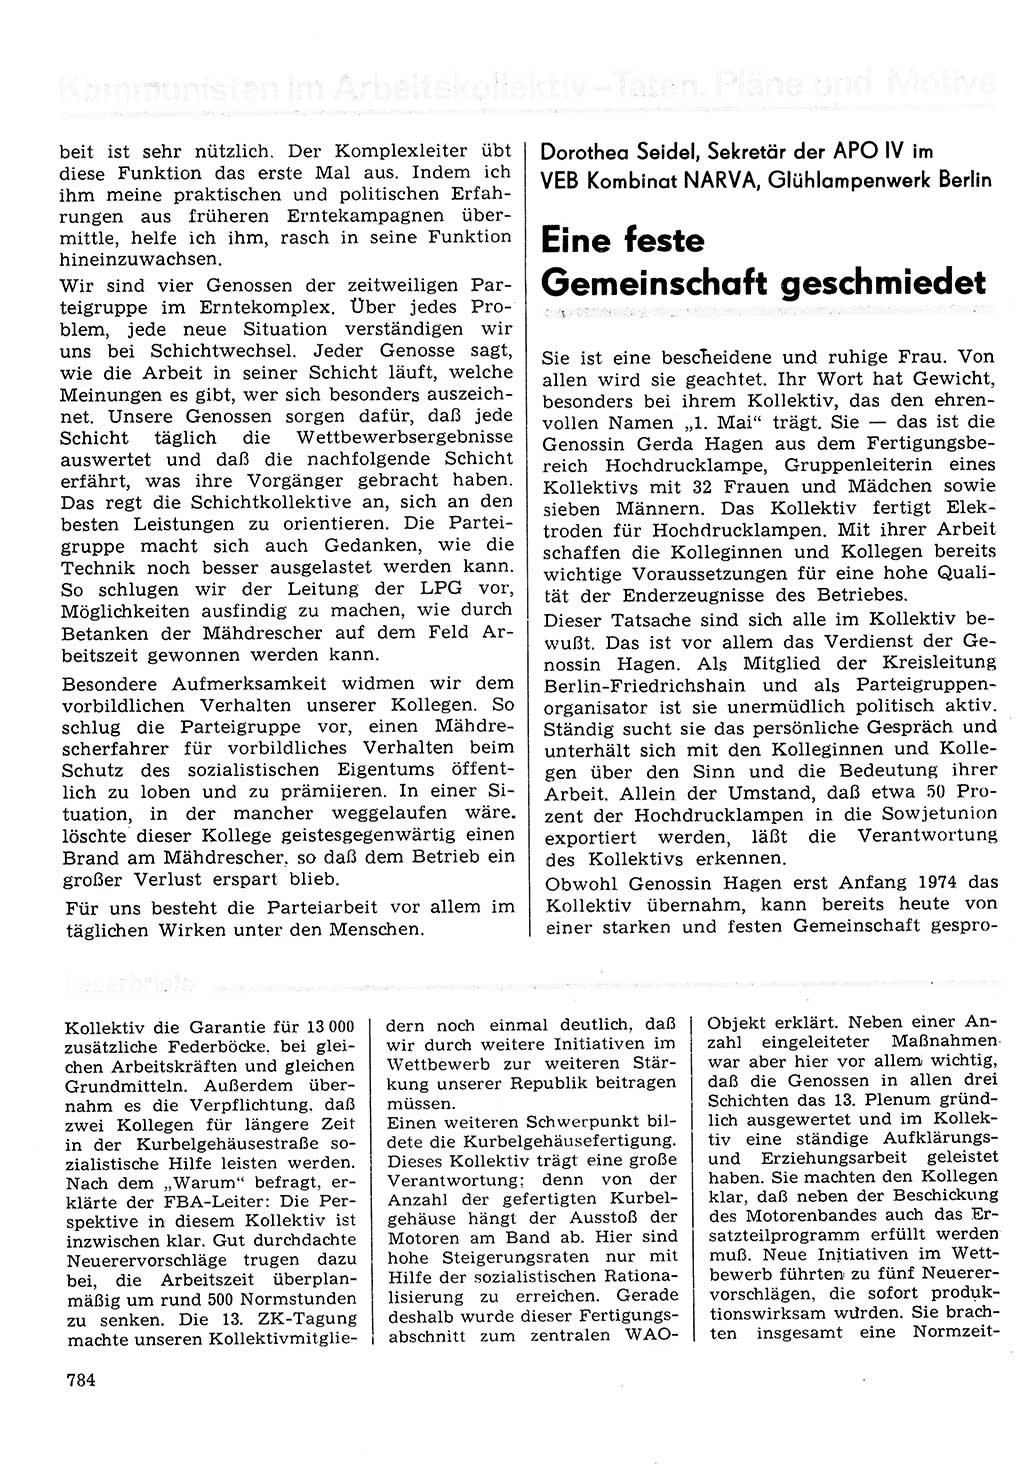 Neuer Weg (NW), Organ des Zentralkomitees (ZK) der SED (Sozialistische Einheitspartei Deutschlands) für Fragen des Parteilebens, 30. Jahrgang [Deutsche Demokratische Republik (DDR)] 1975, Seite 784 (NW ZK SED DDR 1975, S. 784)